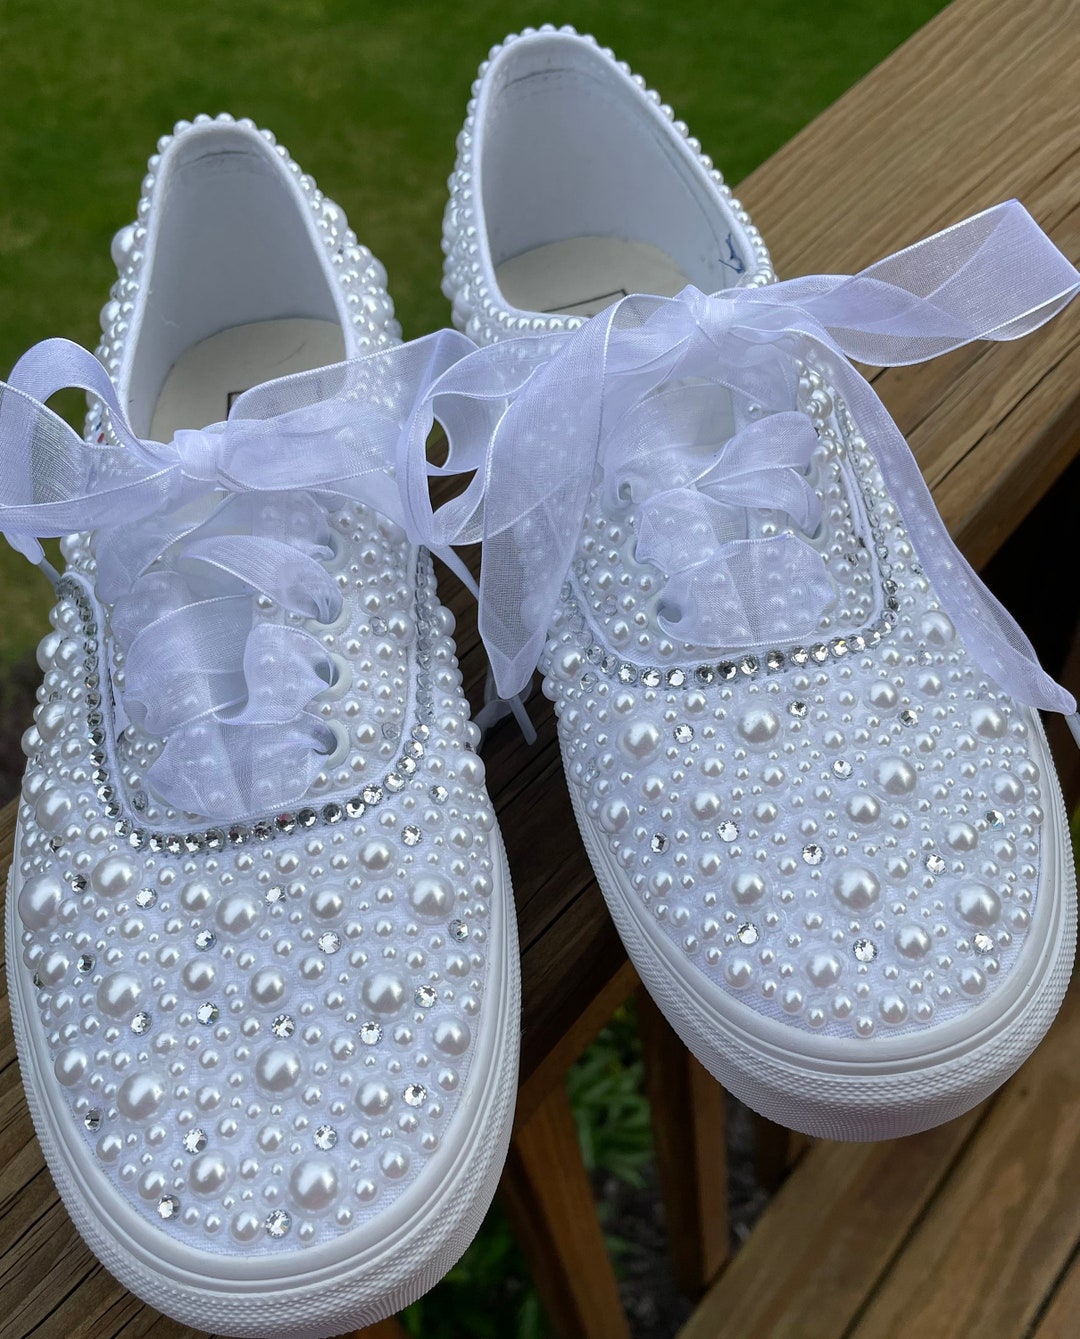 Pearl and Bling Covered Van Sneakers Wedding Sneakers - Etsy